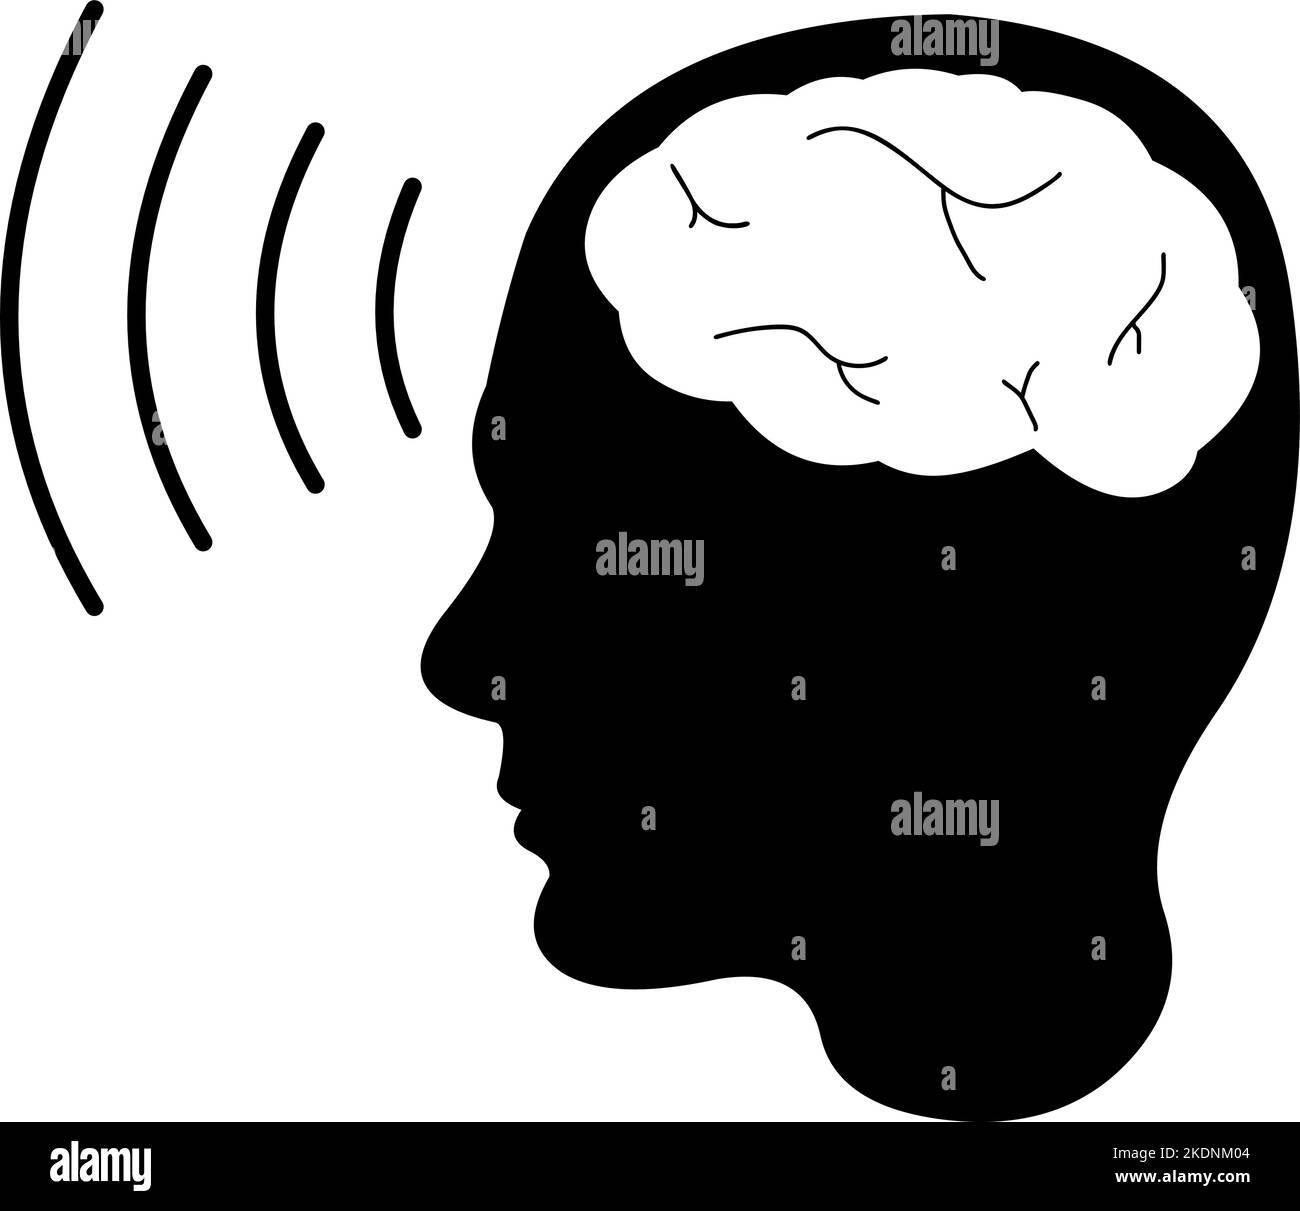 Immagine vettoriale della silhouette nera di una persona con onde cerebrali, nel concetto di telepatia Illustrazione Vettoriale